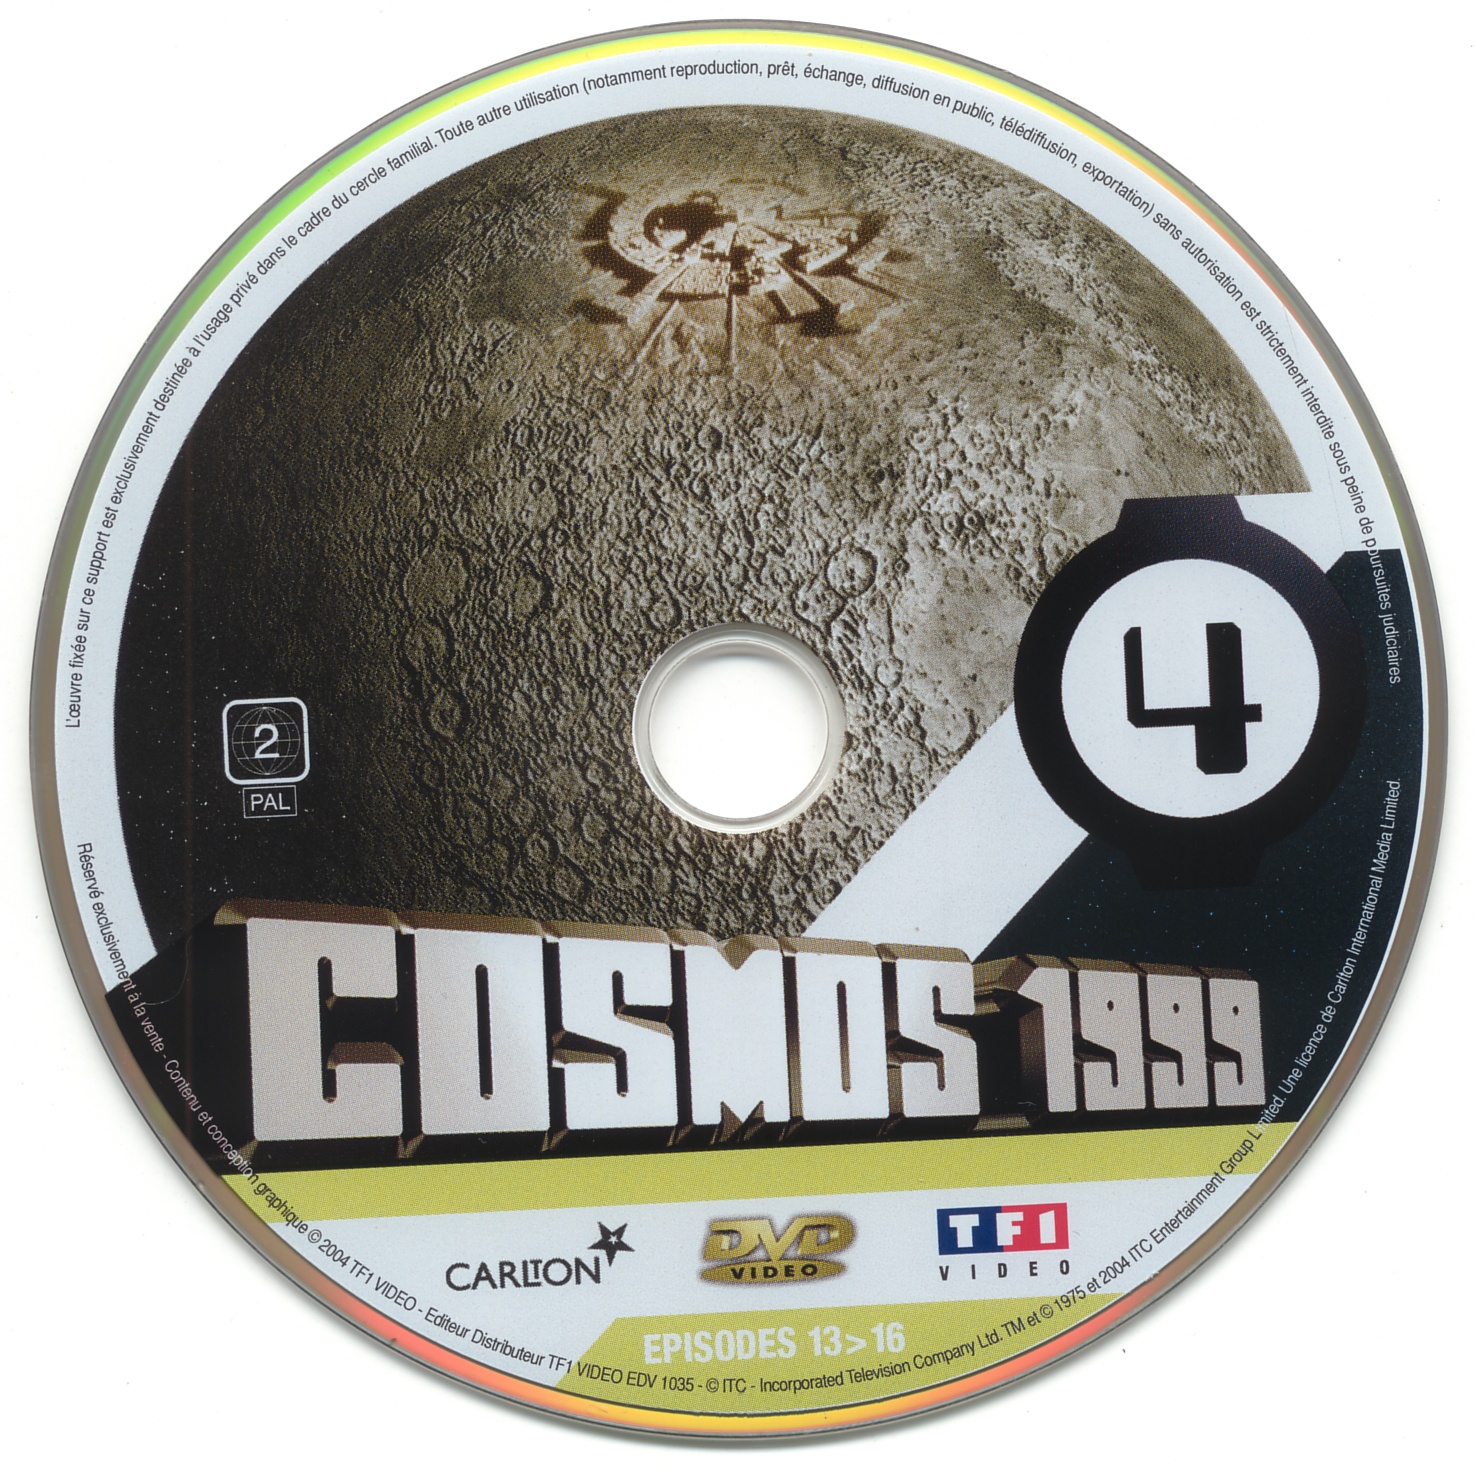 Cosmos 1999 saison 1 dvd 4